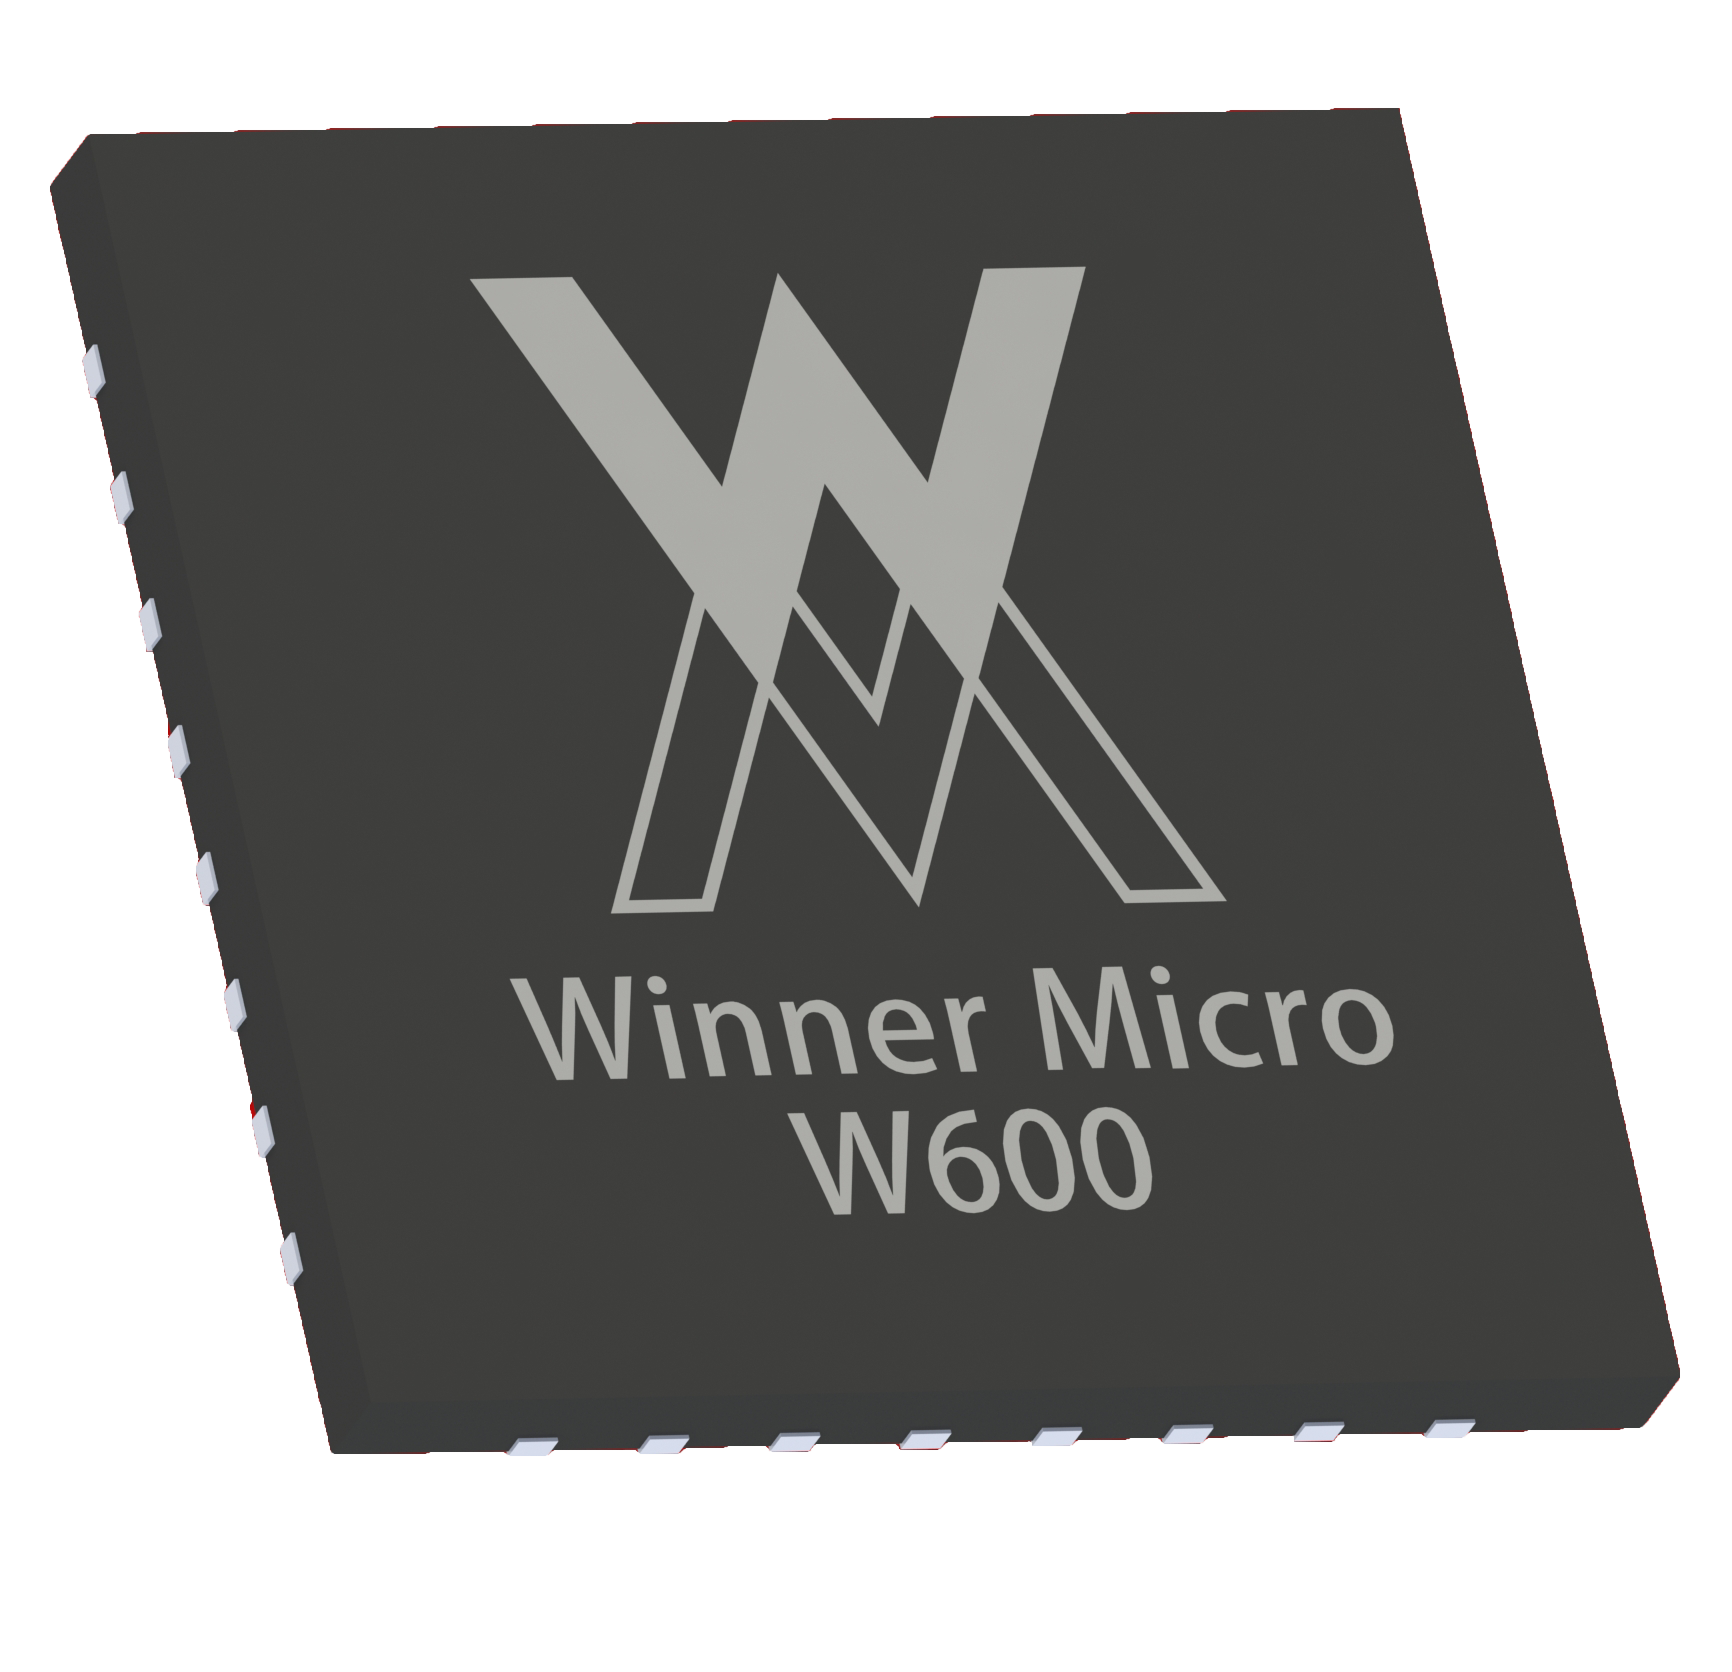  W600：IoT Wi-Fi SoC 芯片